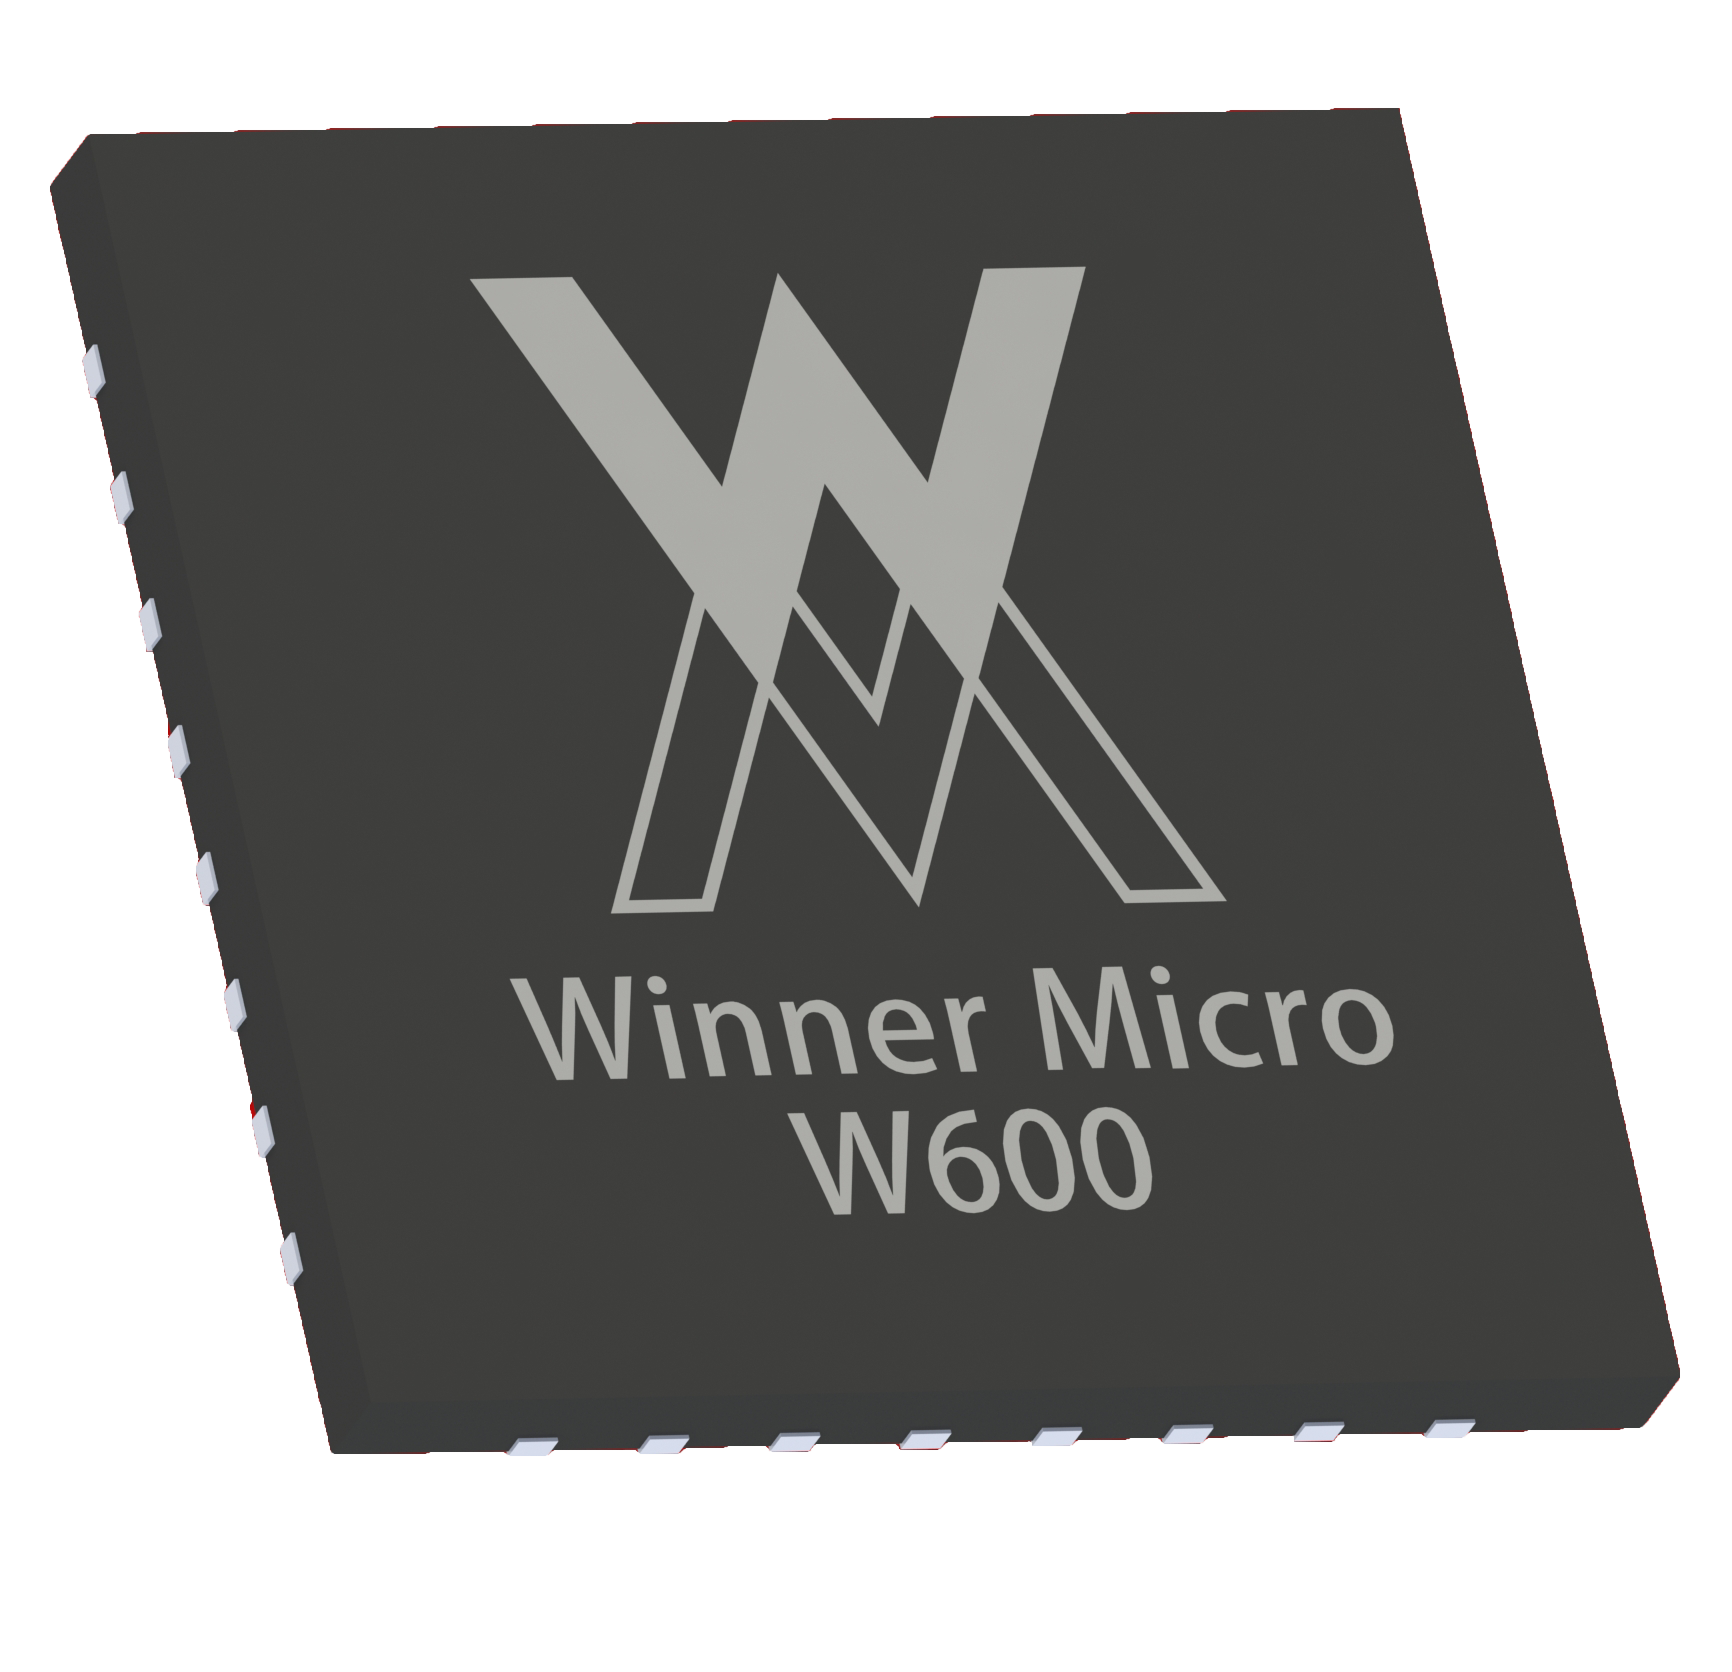  W600：IoT Wi-Fi SoC 芯片